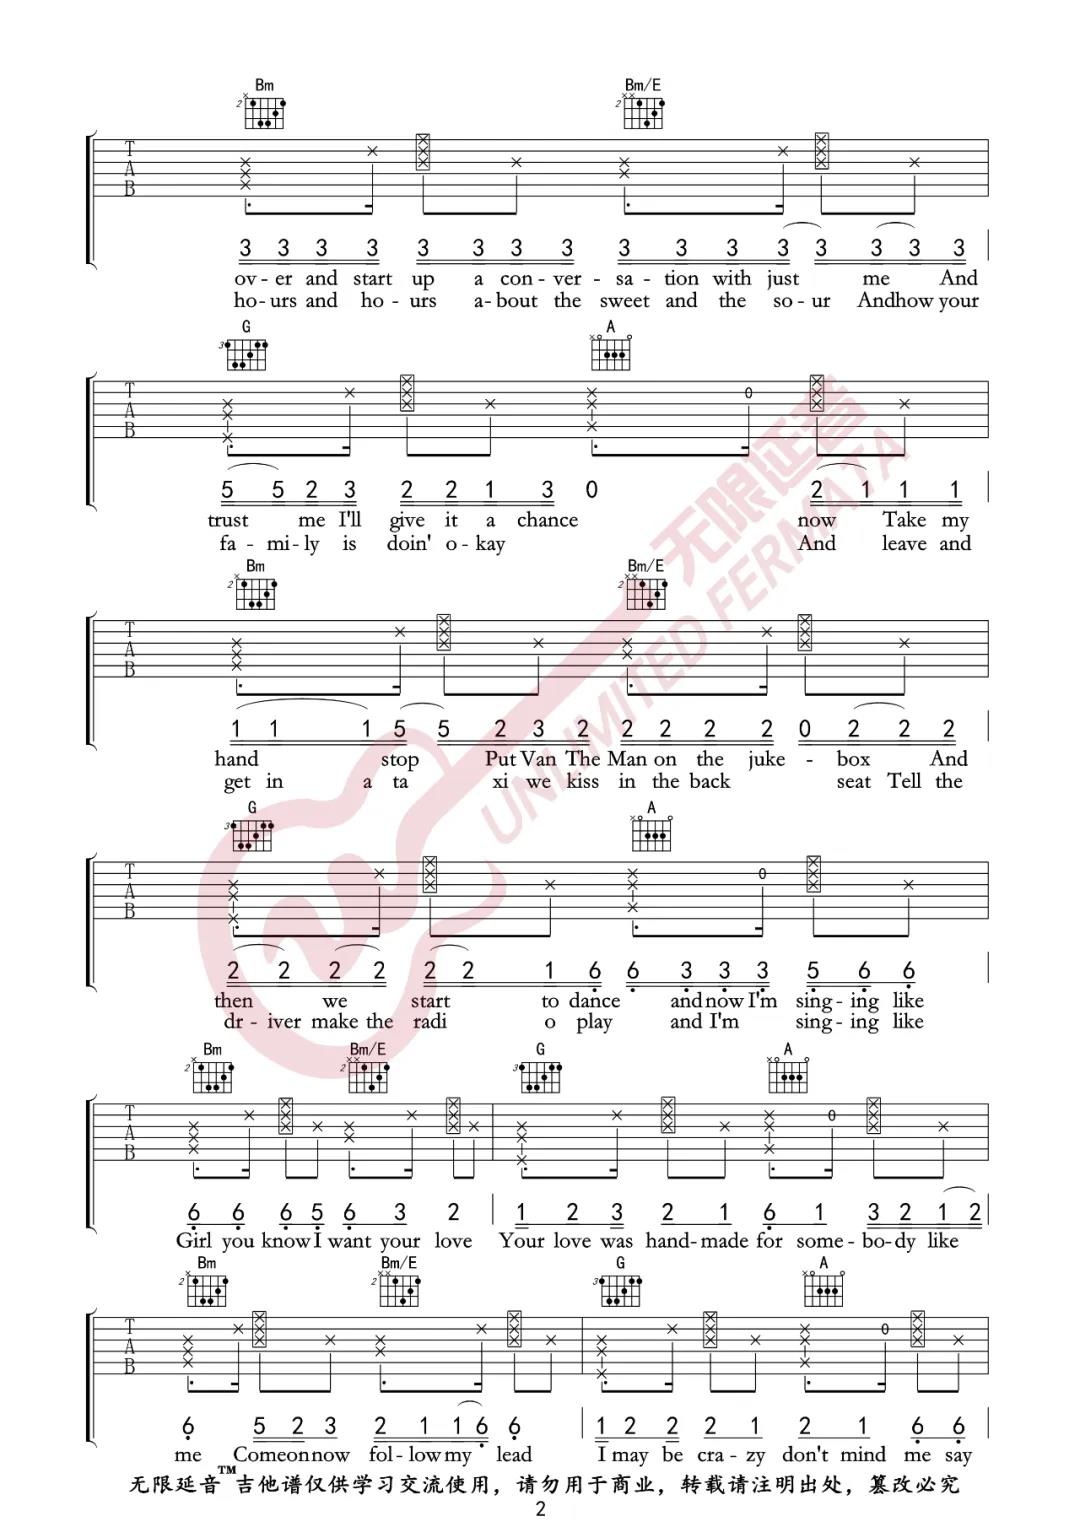 Ed,Sheeran《Shape Of You》吉他谱(D调)-Guitar Music Score